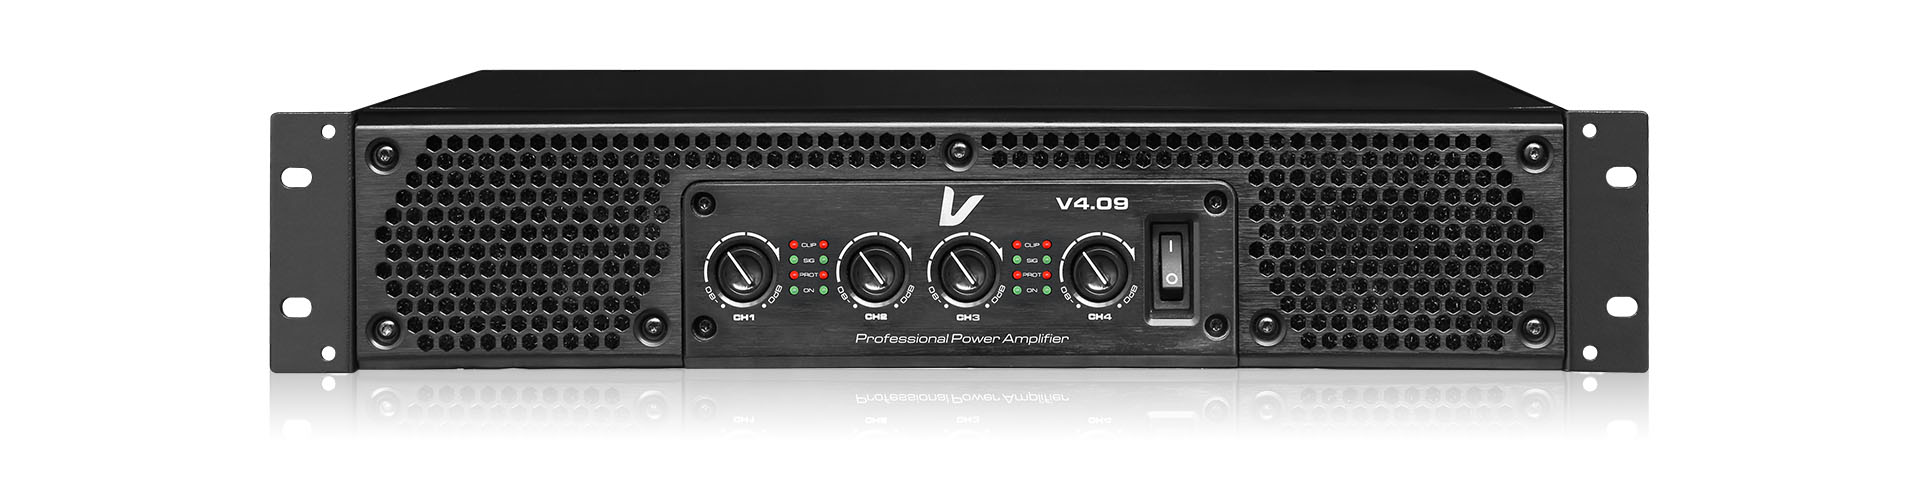 Bộ tăng âm điện Verity V4.09